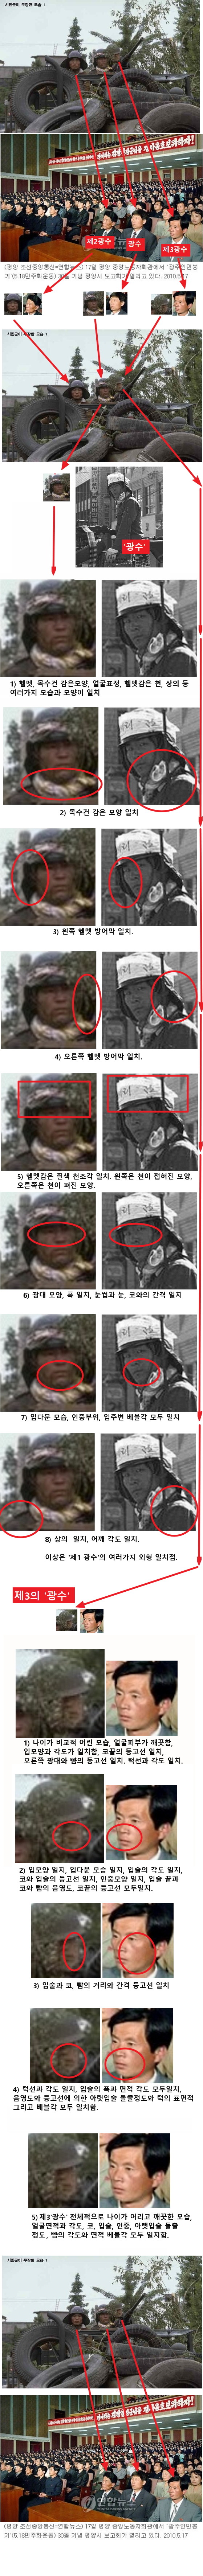 시스템클럽(http://www.systemclub.co.kr/) 홈페이지에 올라와 있는, ‘광수’(광주사태 당시 침투한 북한 특수군) 관련 자료. ⓒ 시스템클럽 홈페이지 캡처